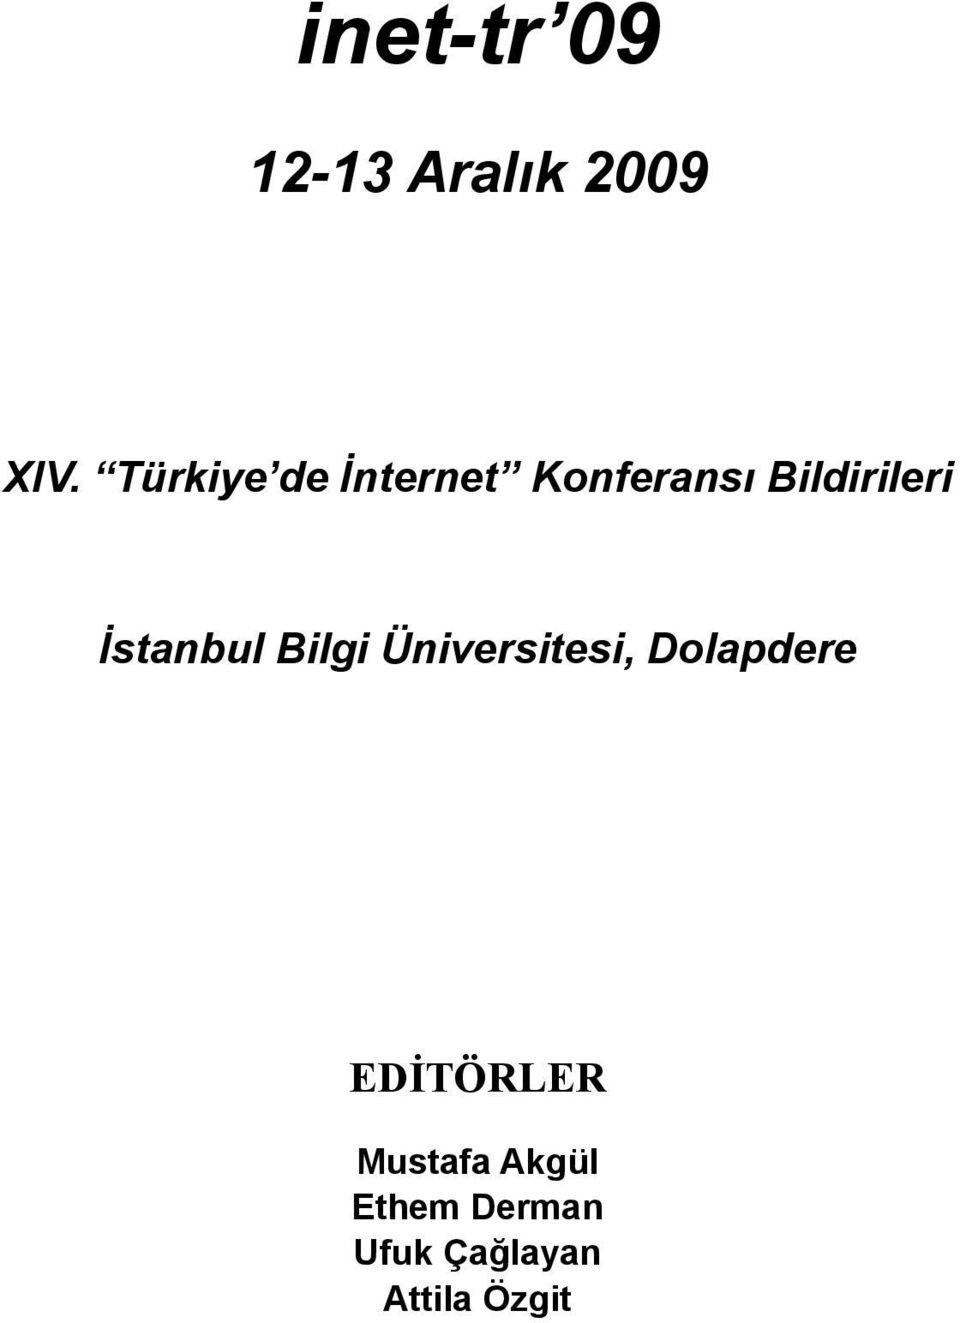 İstanbul Bilgi Üniversitesi, Dolapdere